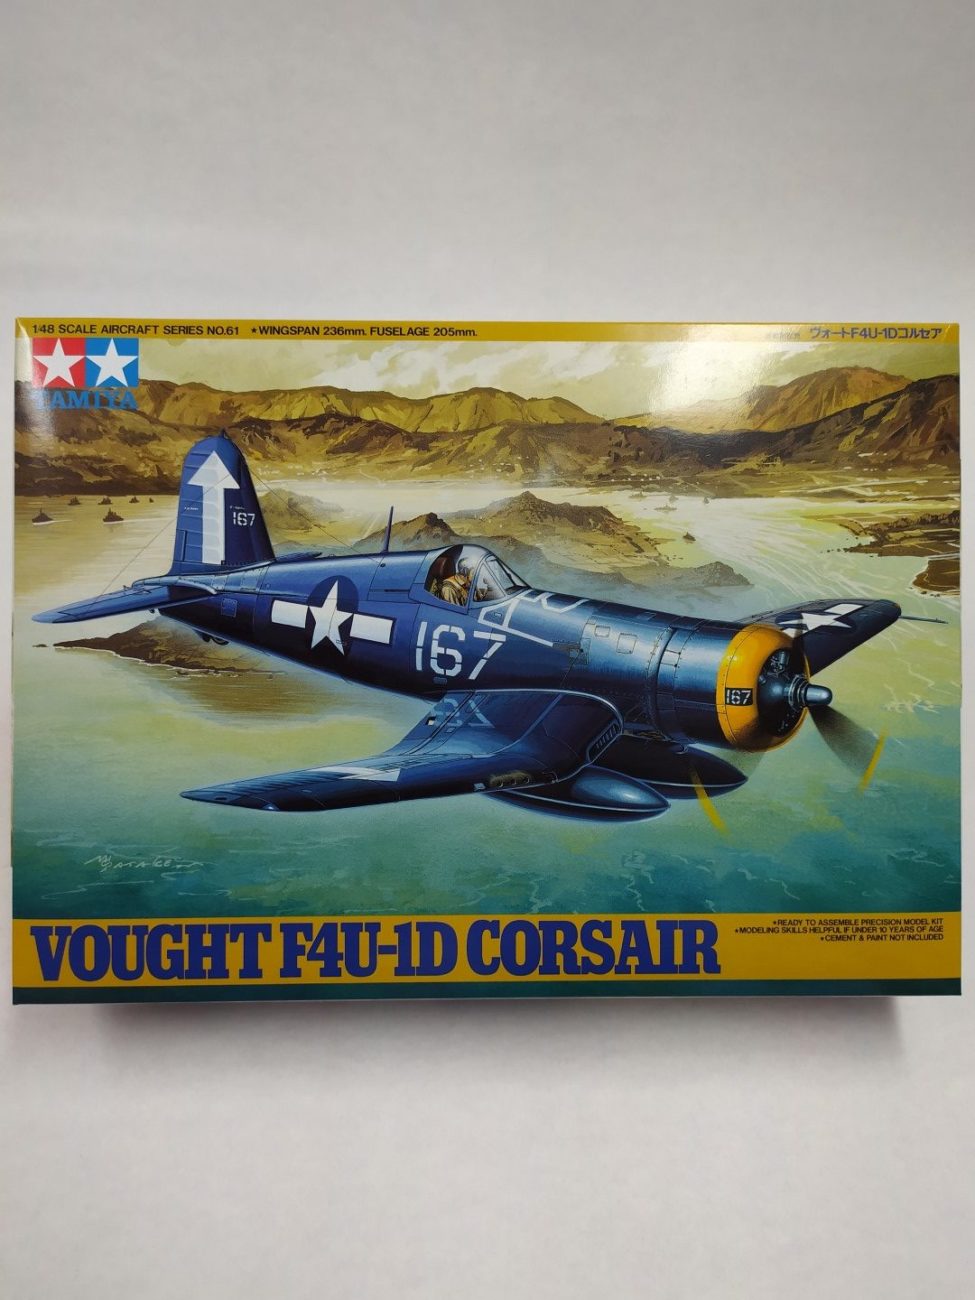 1D Corsair - Vought F4U-1D